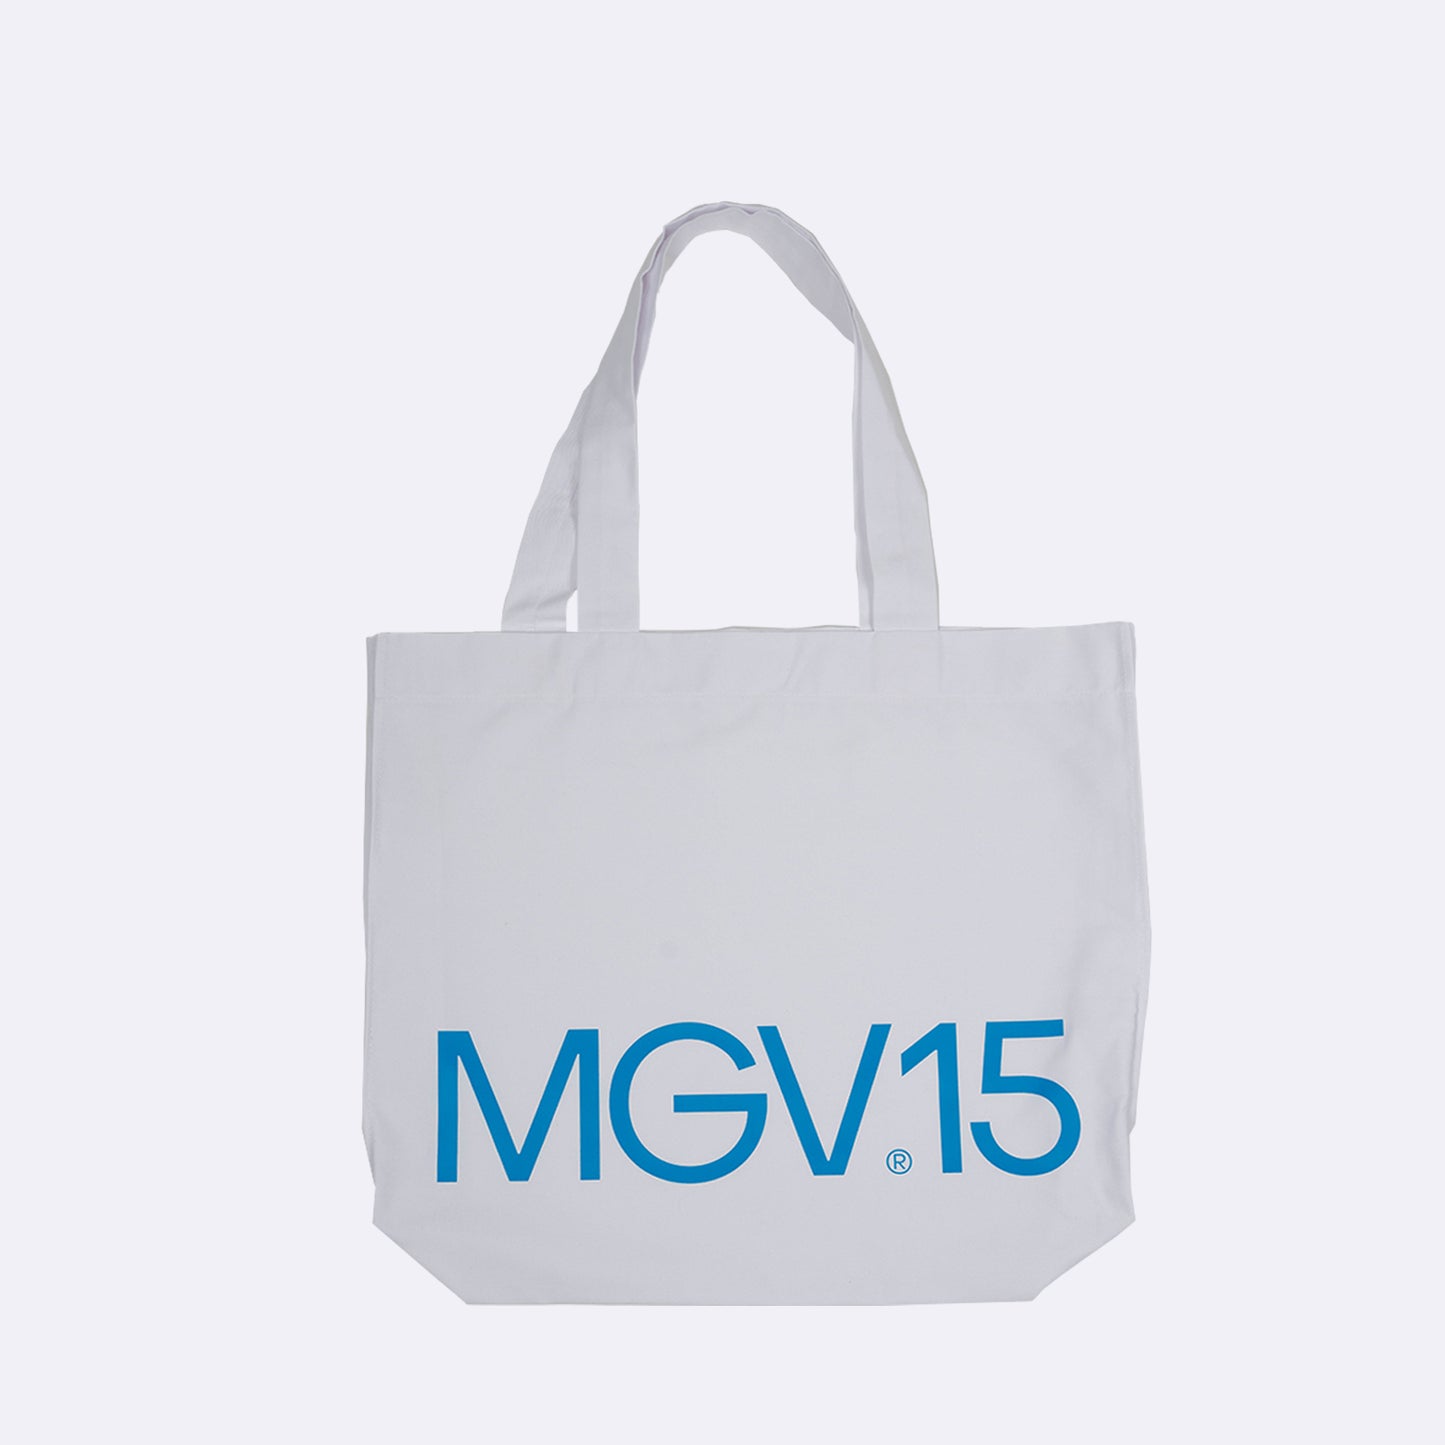 MGV15 Tote Bag Blanca